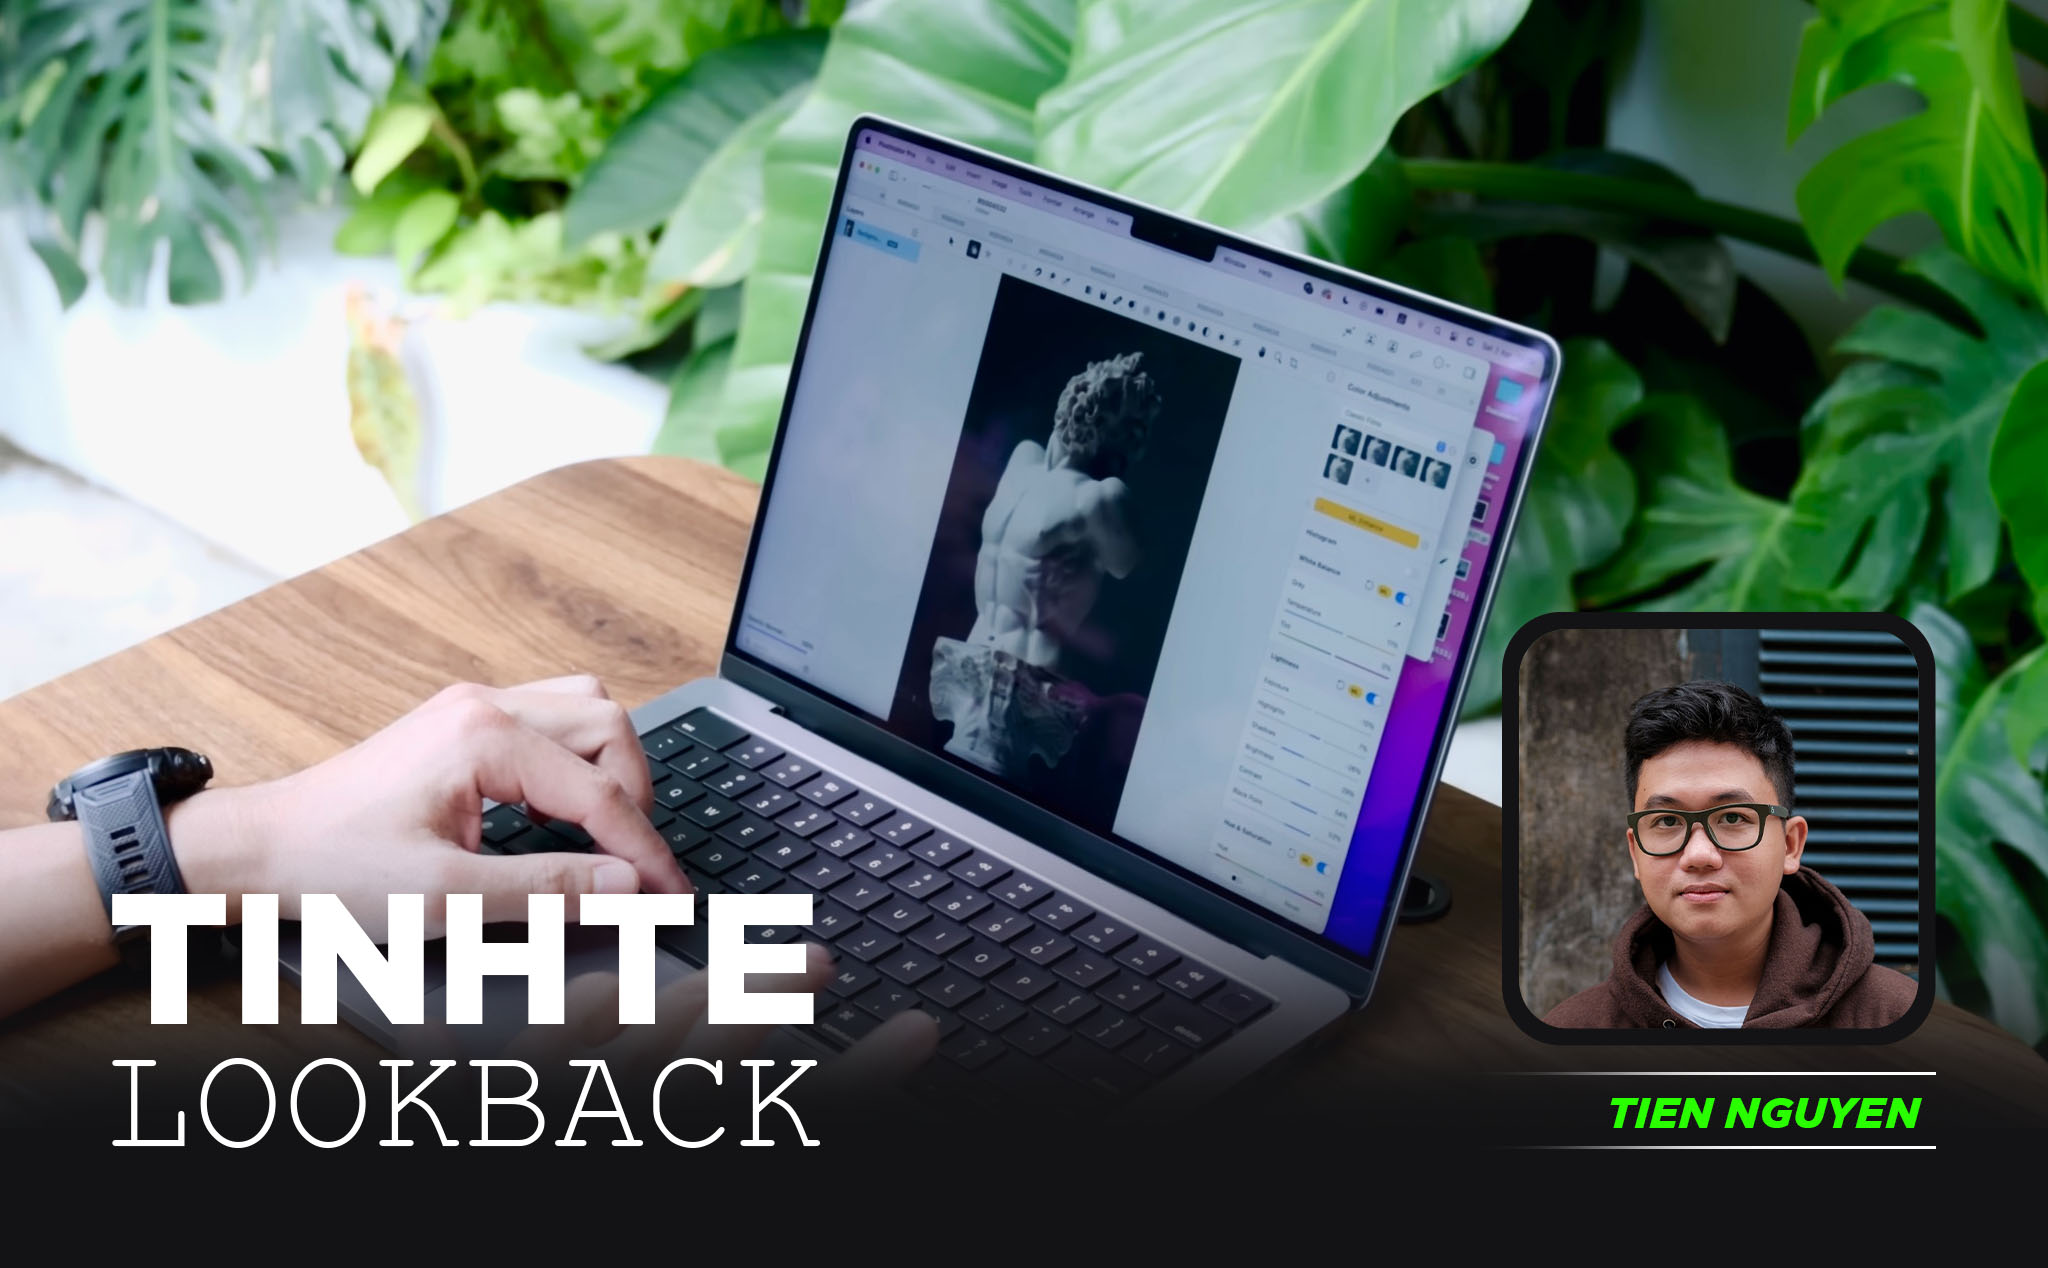 #TinhteLookBack: MacBook Pro 14" gắn bó với mình gần 1 năm qua